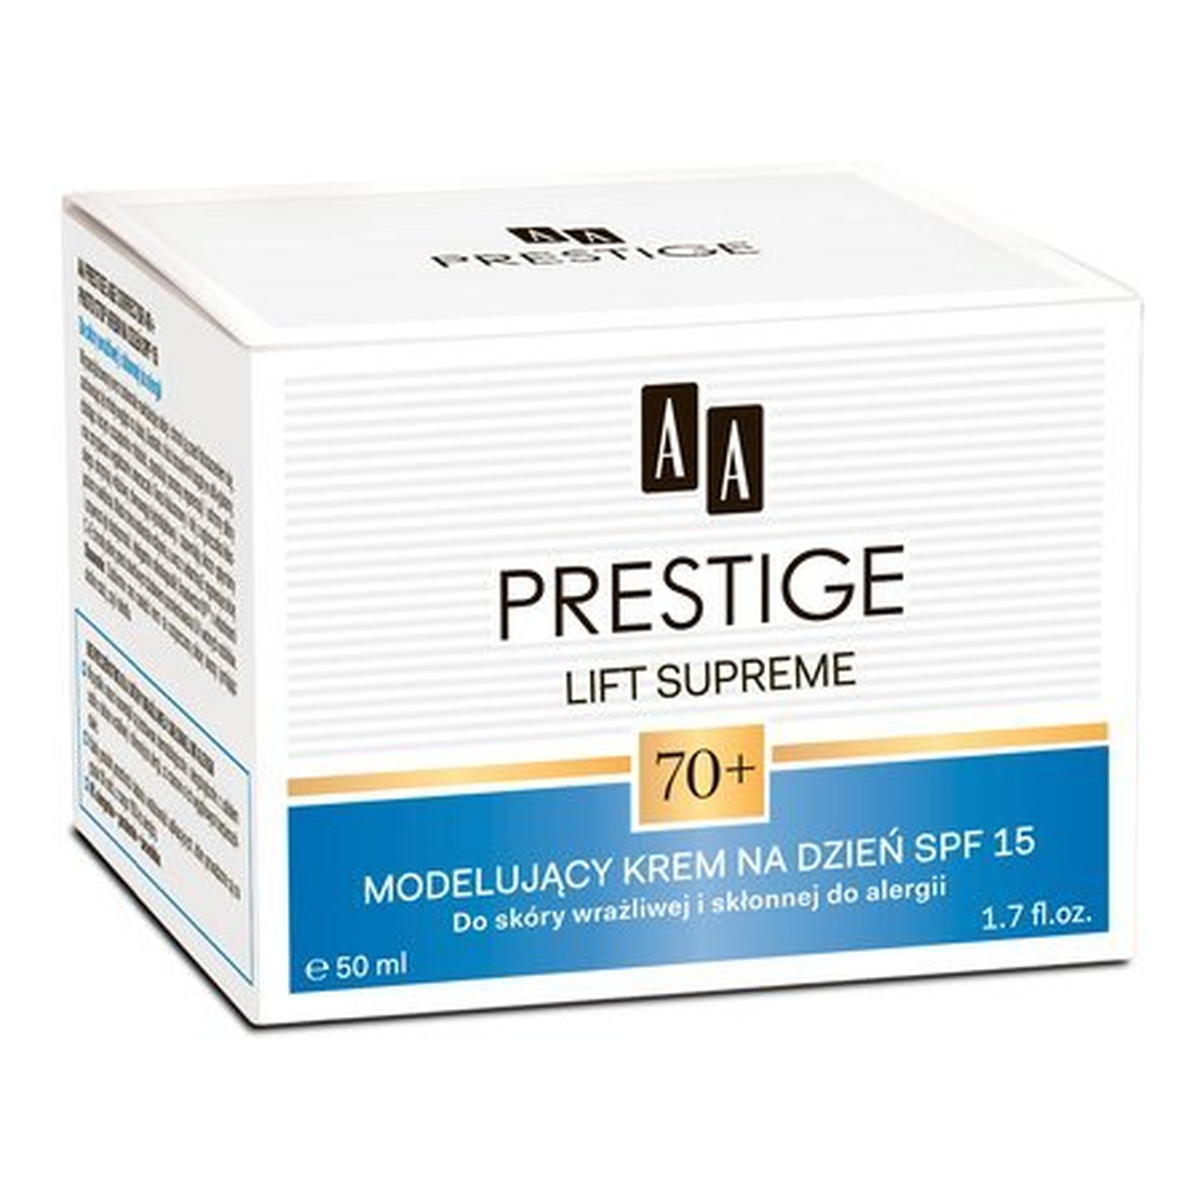 AA Prestige Lift Supreme 70+ Modelujący Krem Na Dzień SPF 15 50ml